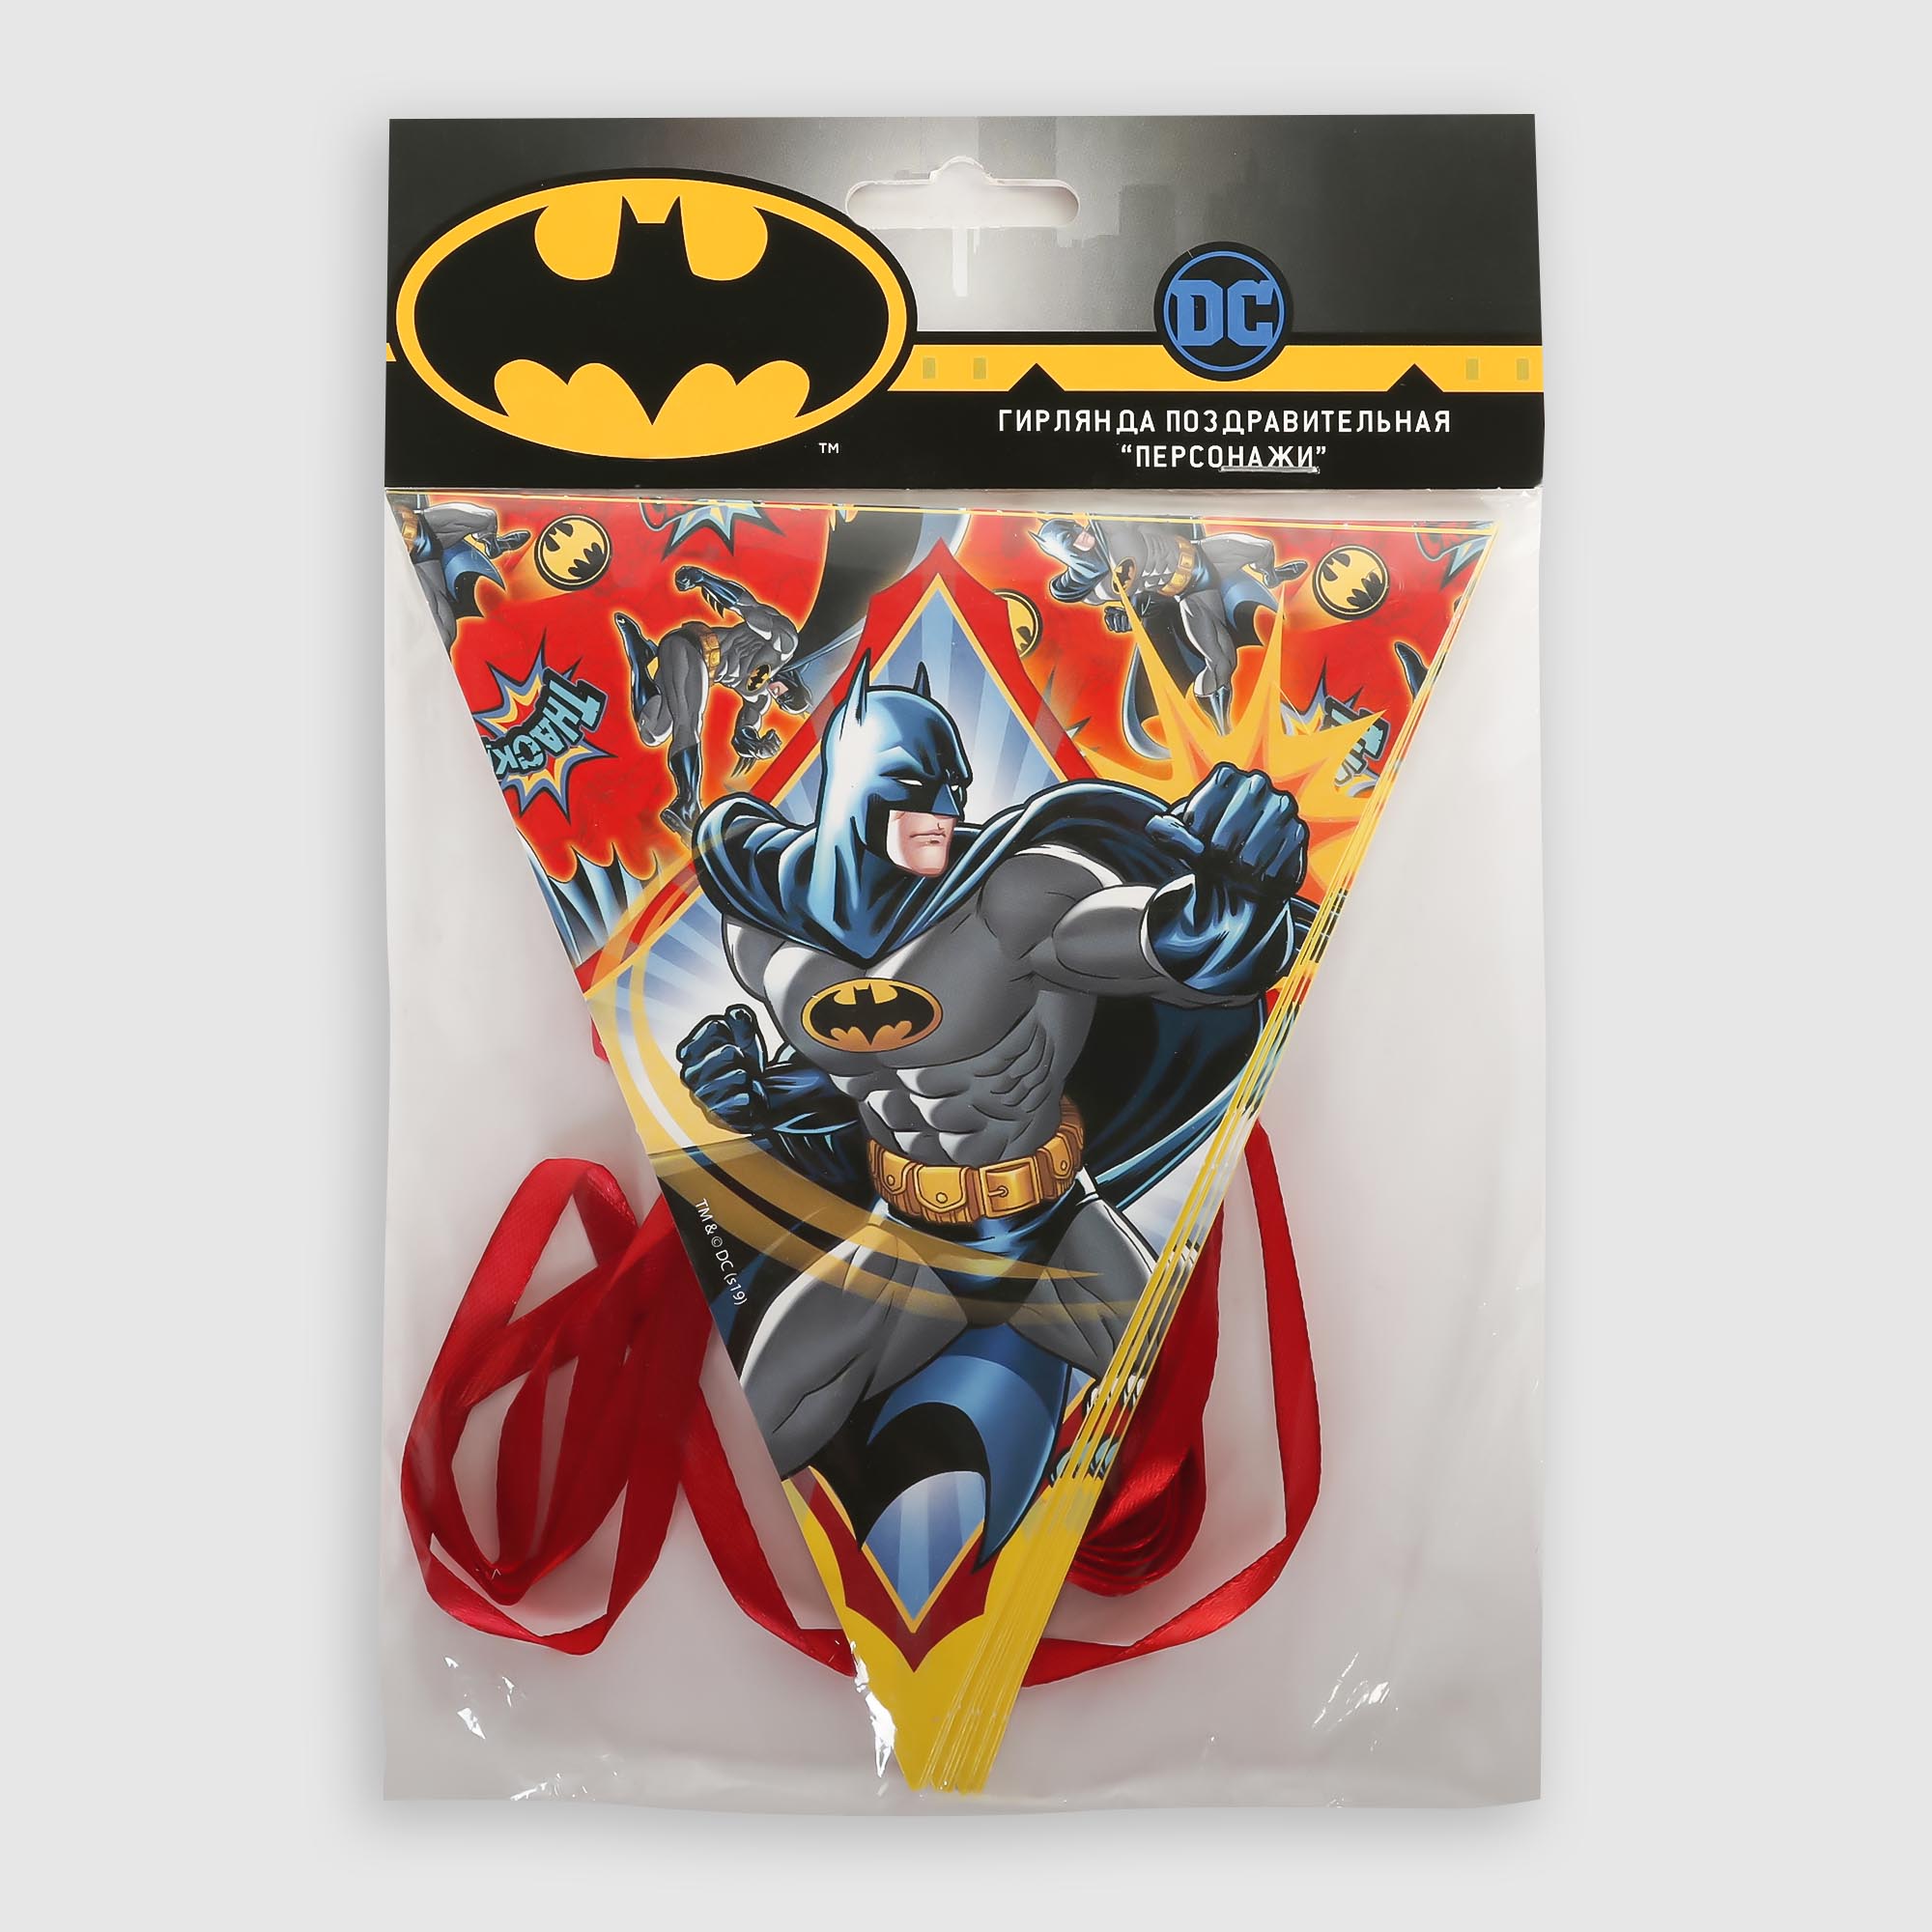 Гирлянда поздравительная ND Play персонаж Batman гирлянда поздравительная batman с днем рождения